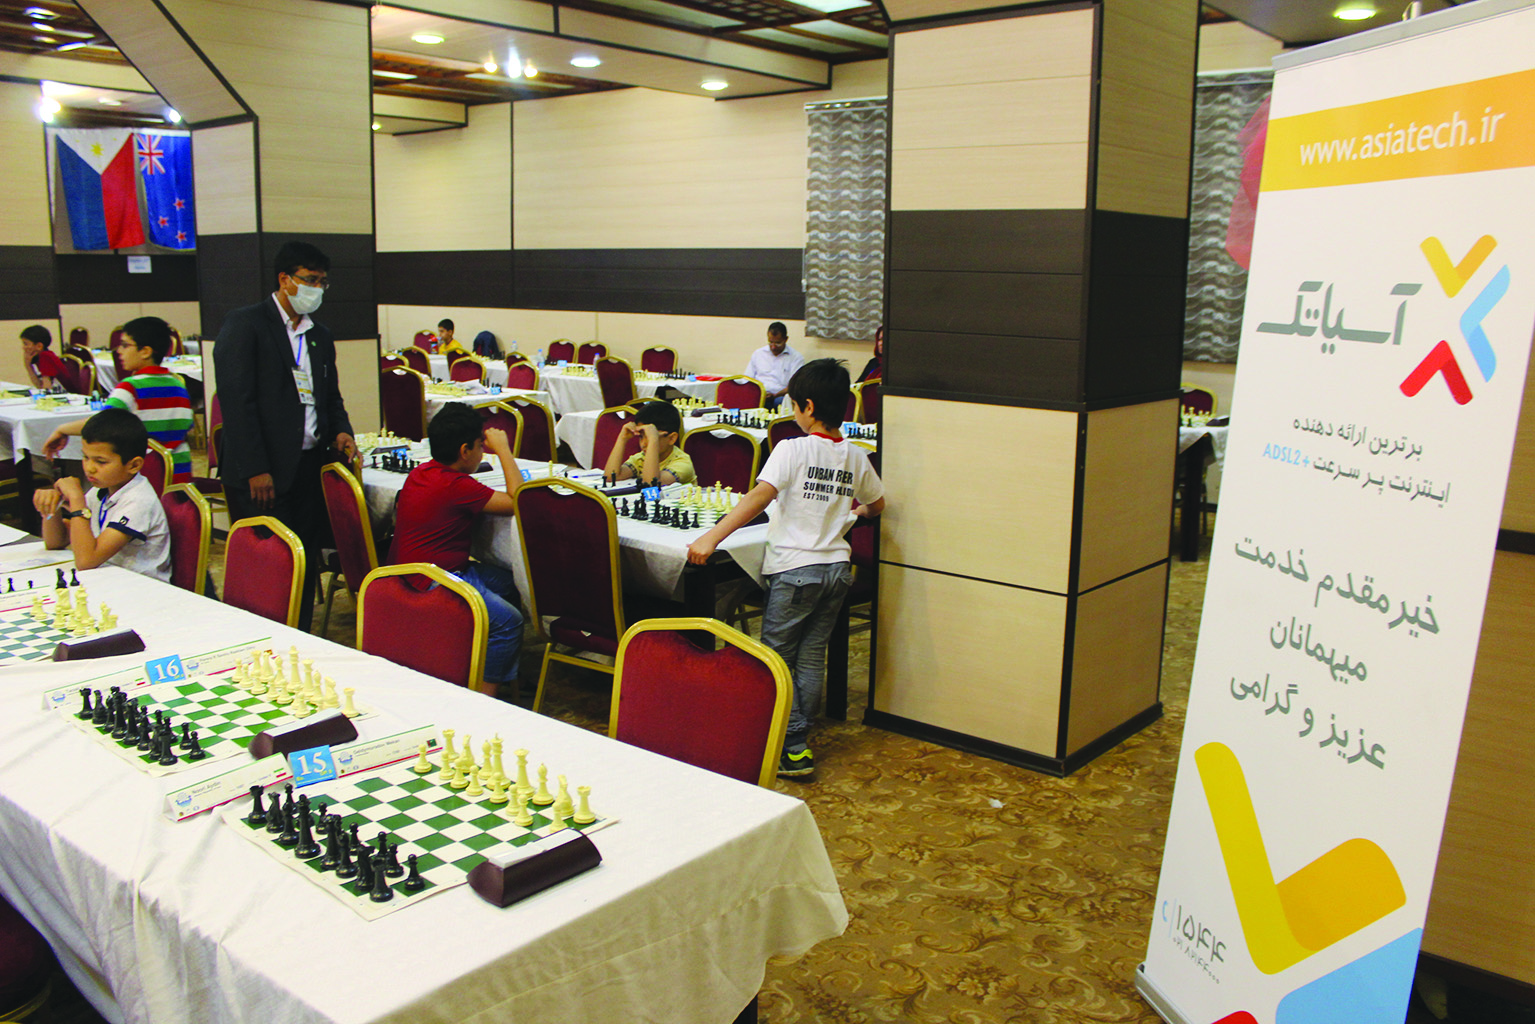 شرکت آسیاتک حامی رقابتهای شطرنج قهرمانی مدارس آسیا شد